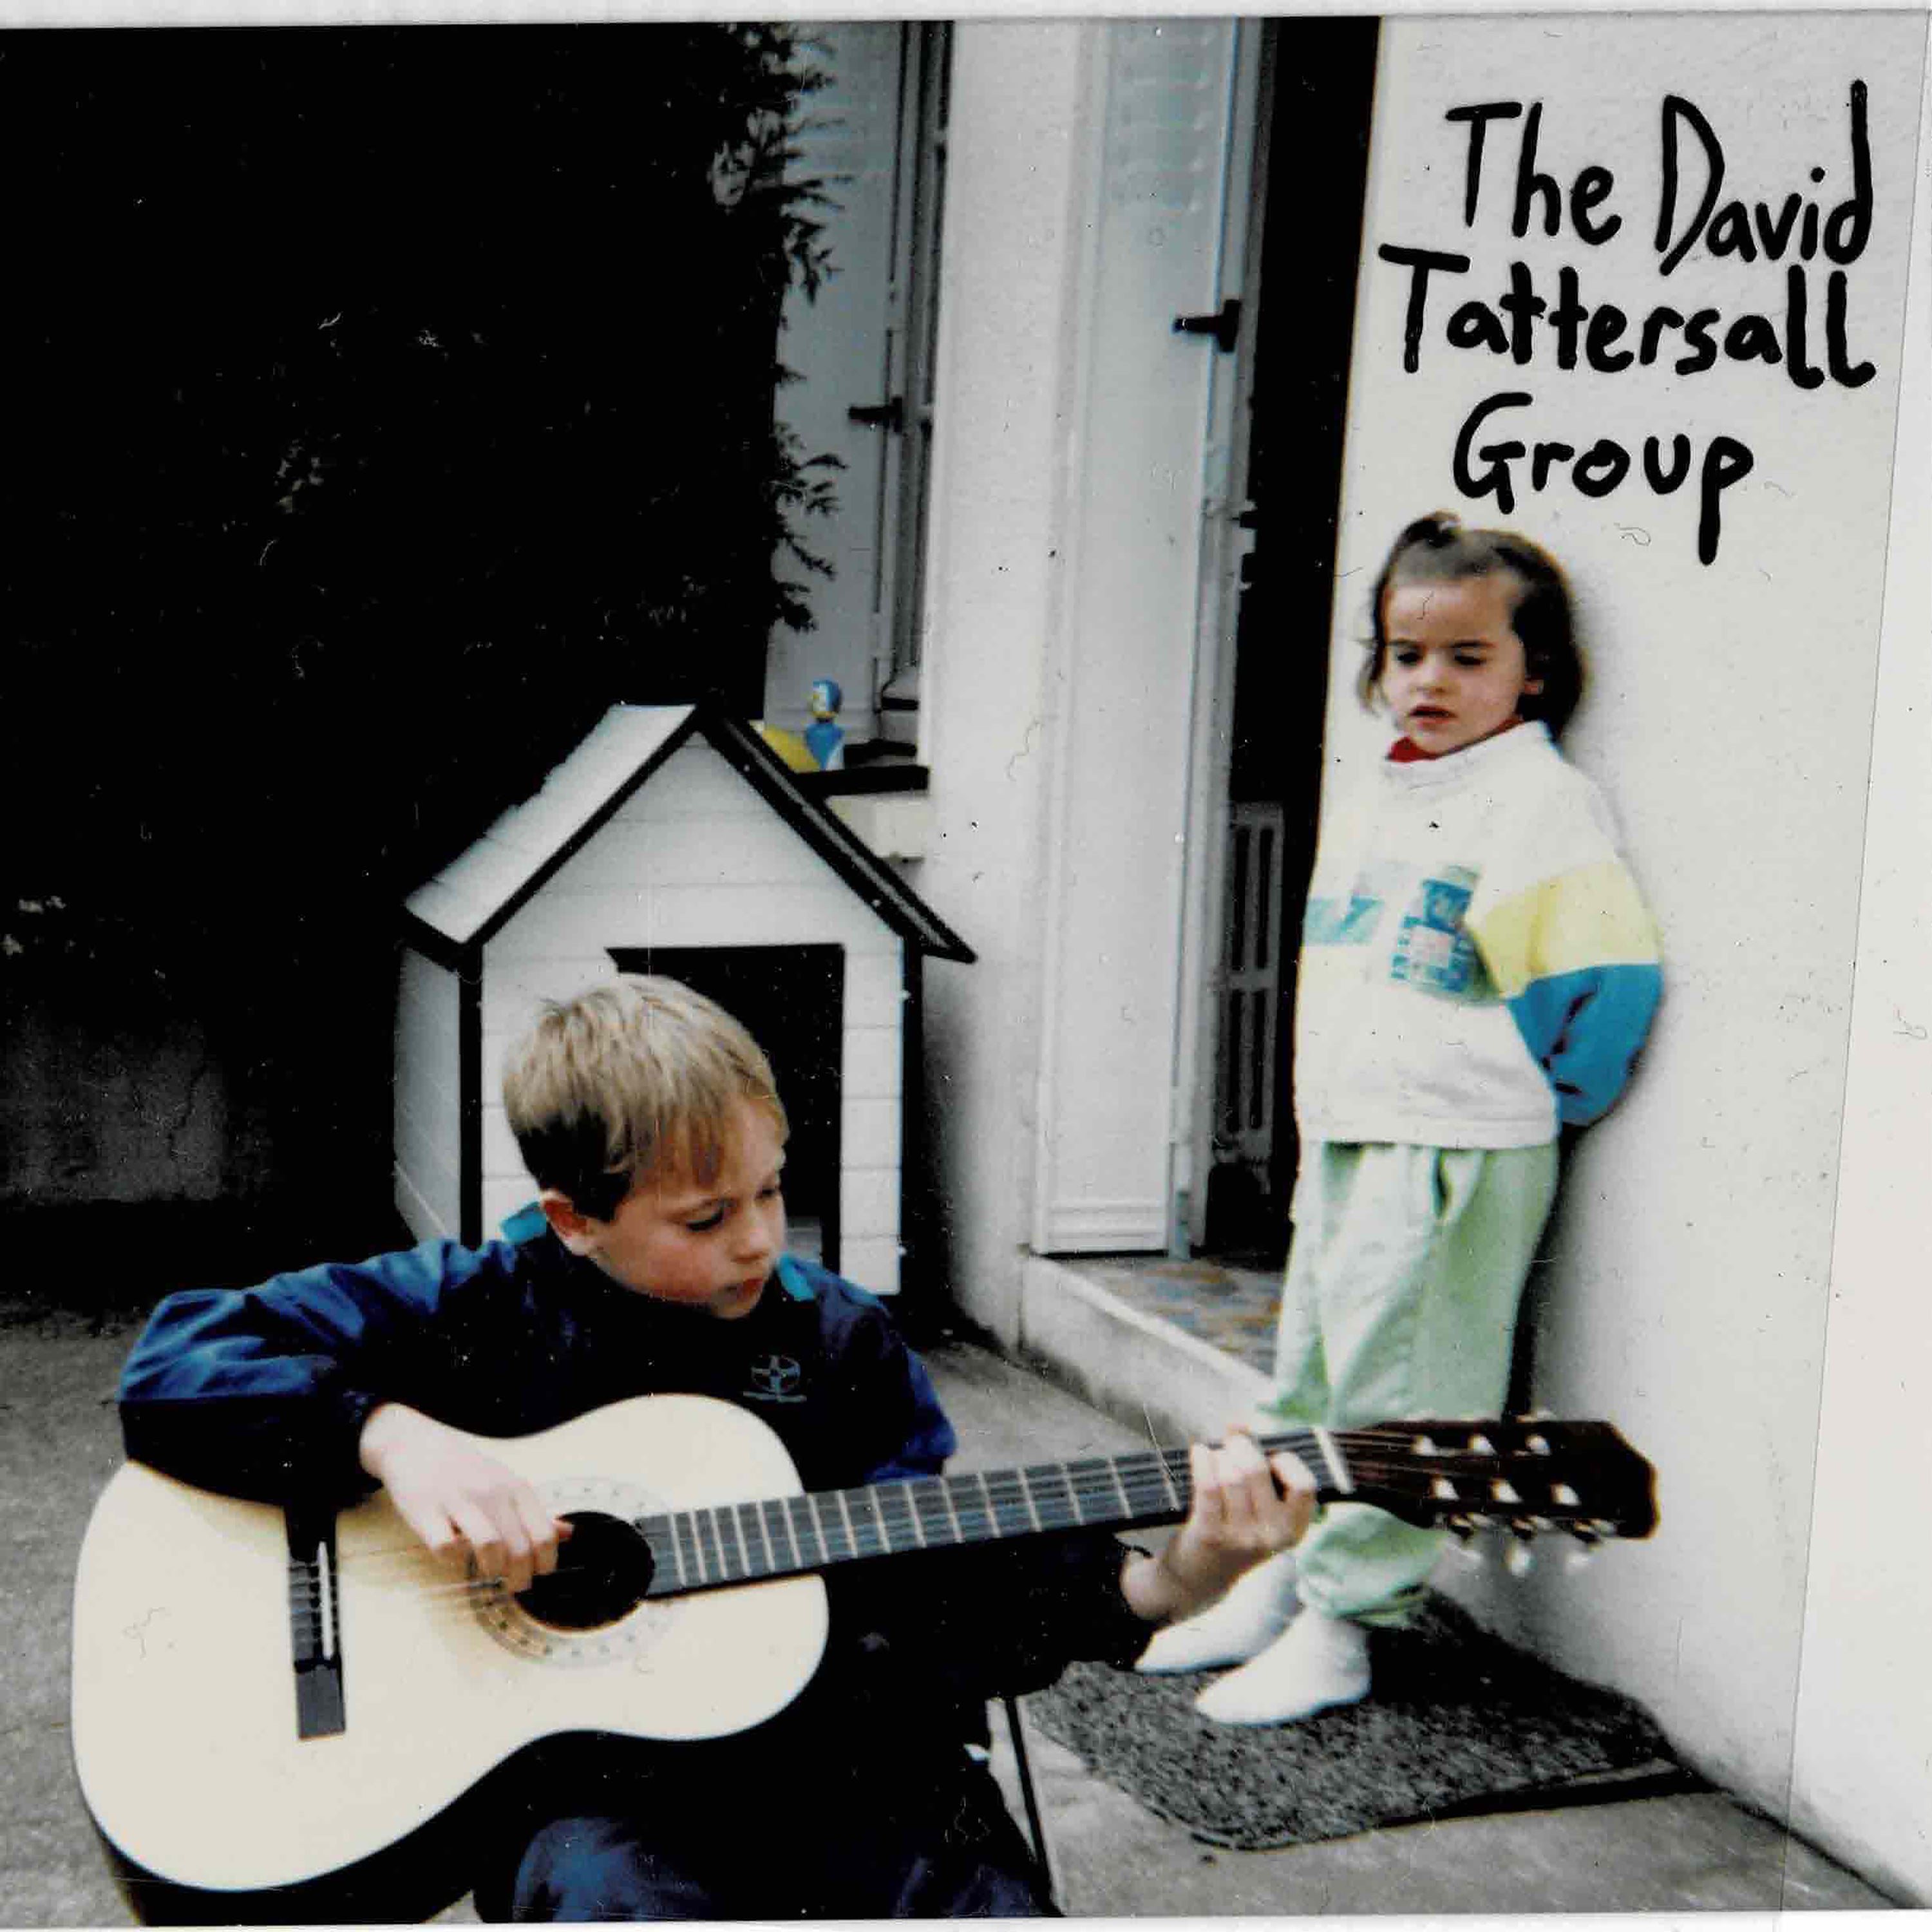 The David Tattersall Group - The David Tattersall Group: Vinyl LP